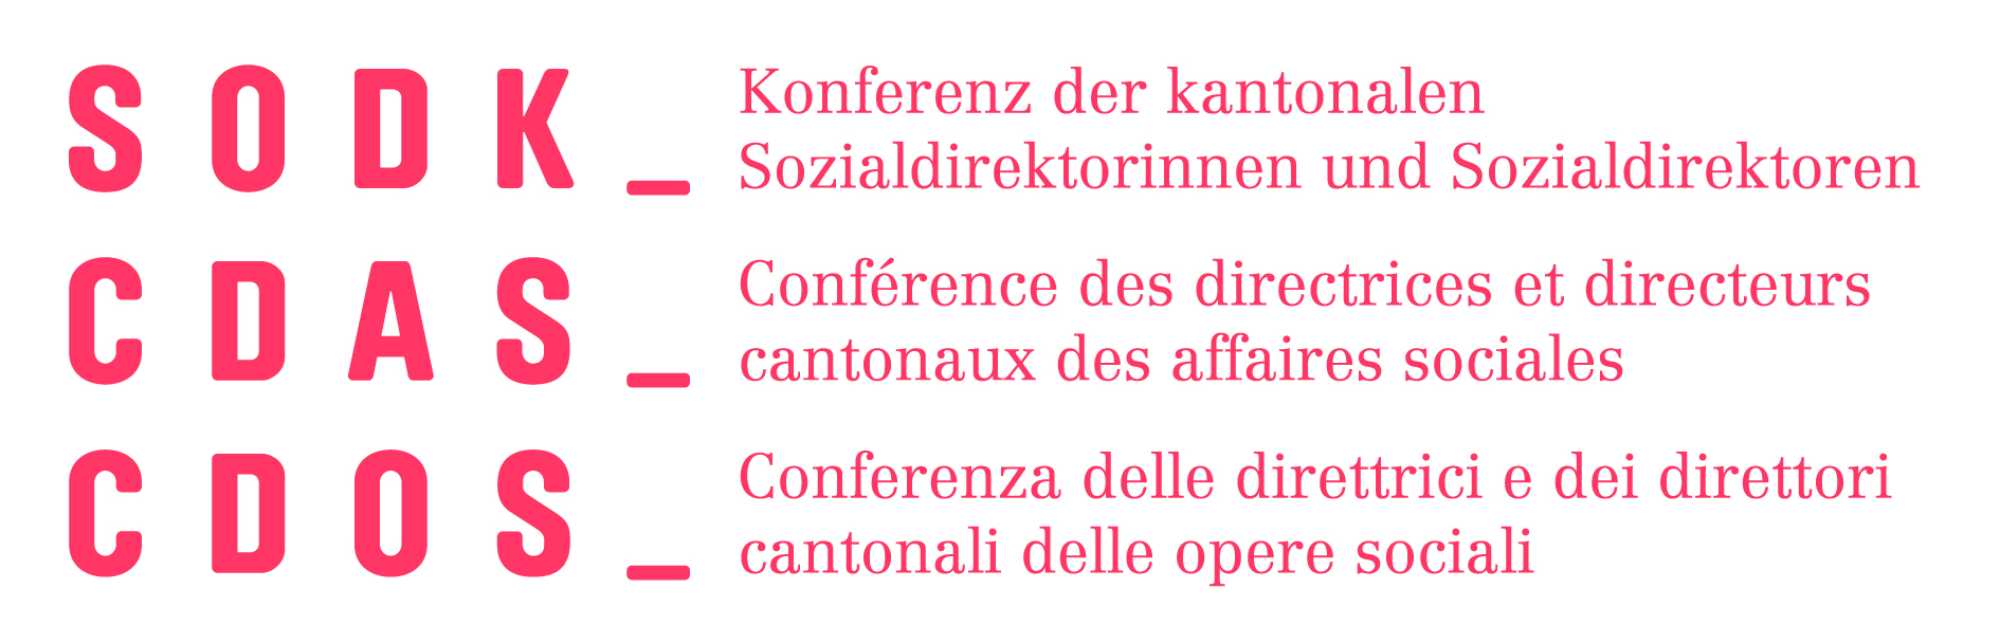 CDAS – Conférence des directrices et directeurs cantonaux des affaires sociales